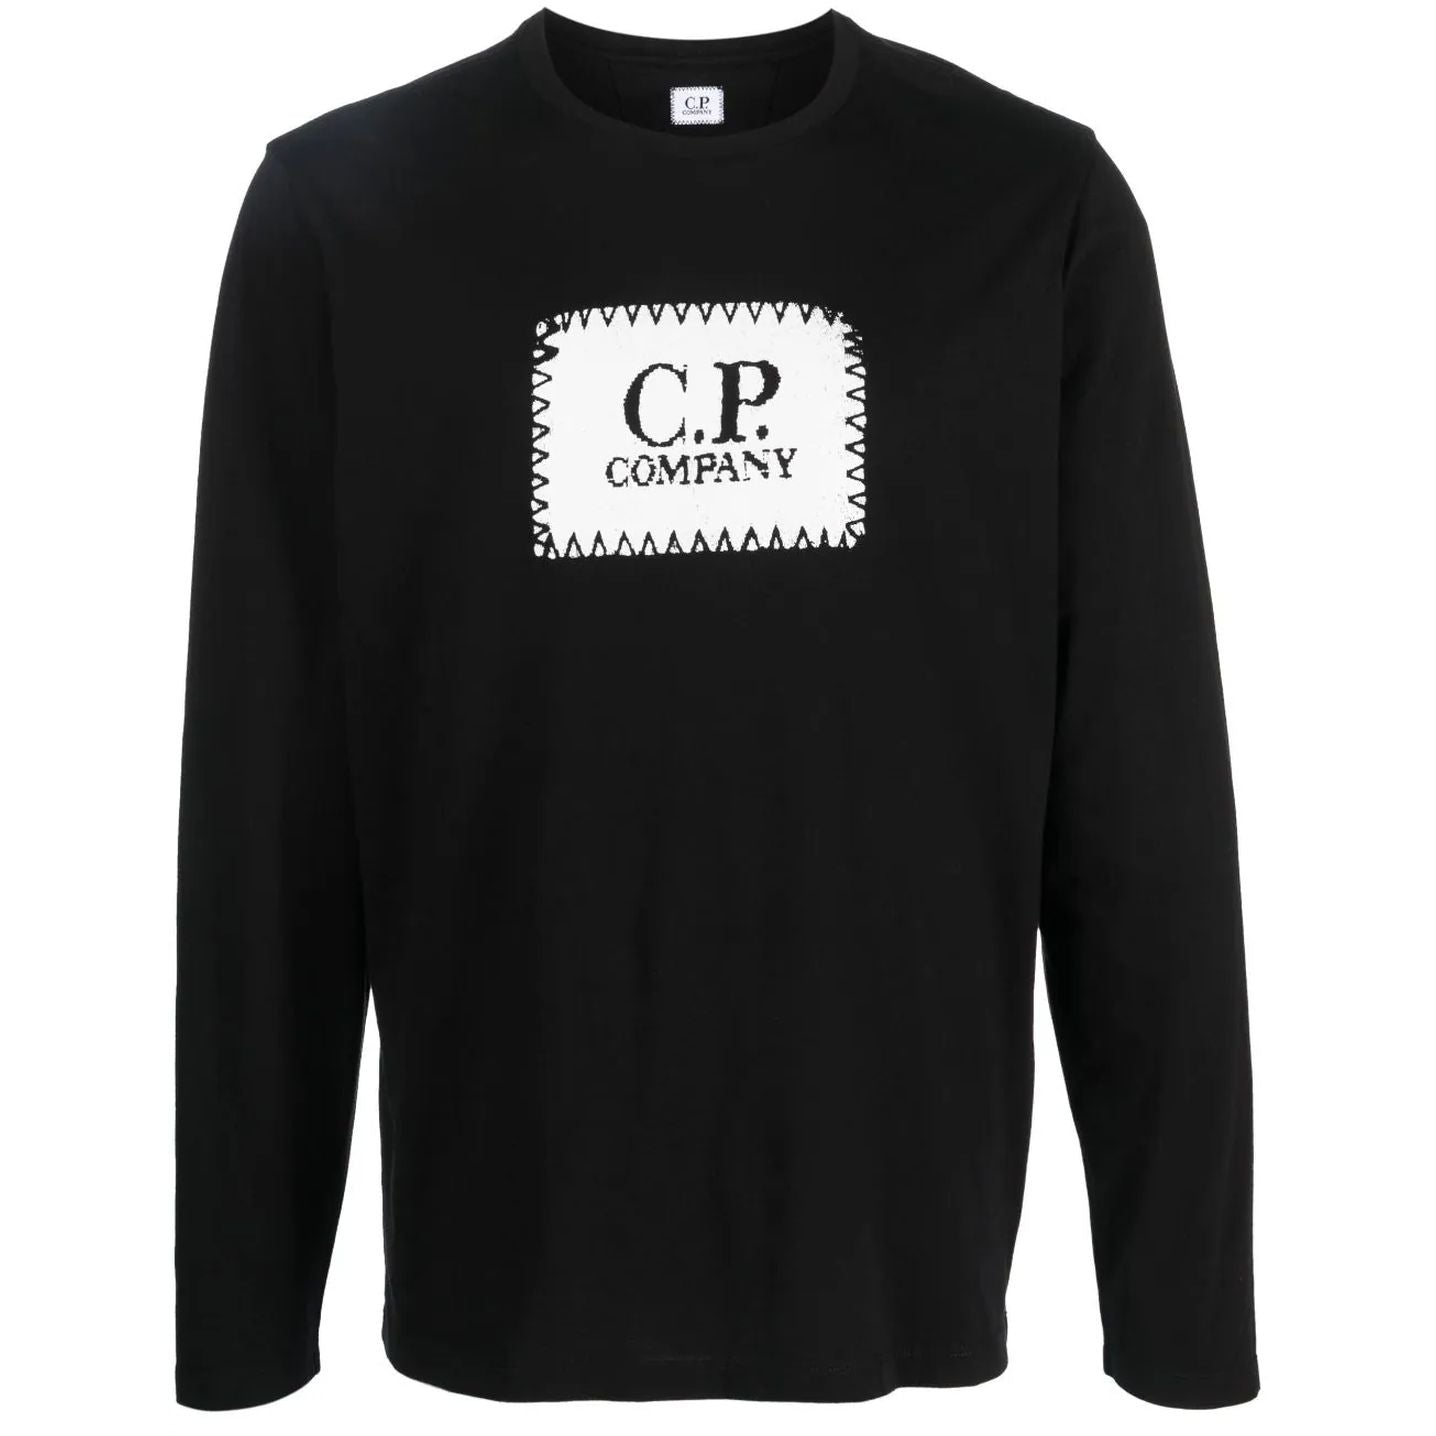 C.P. COMPANY vyriškas juodas megztinis Long sleeve sweater